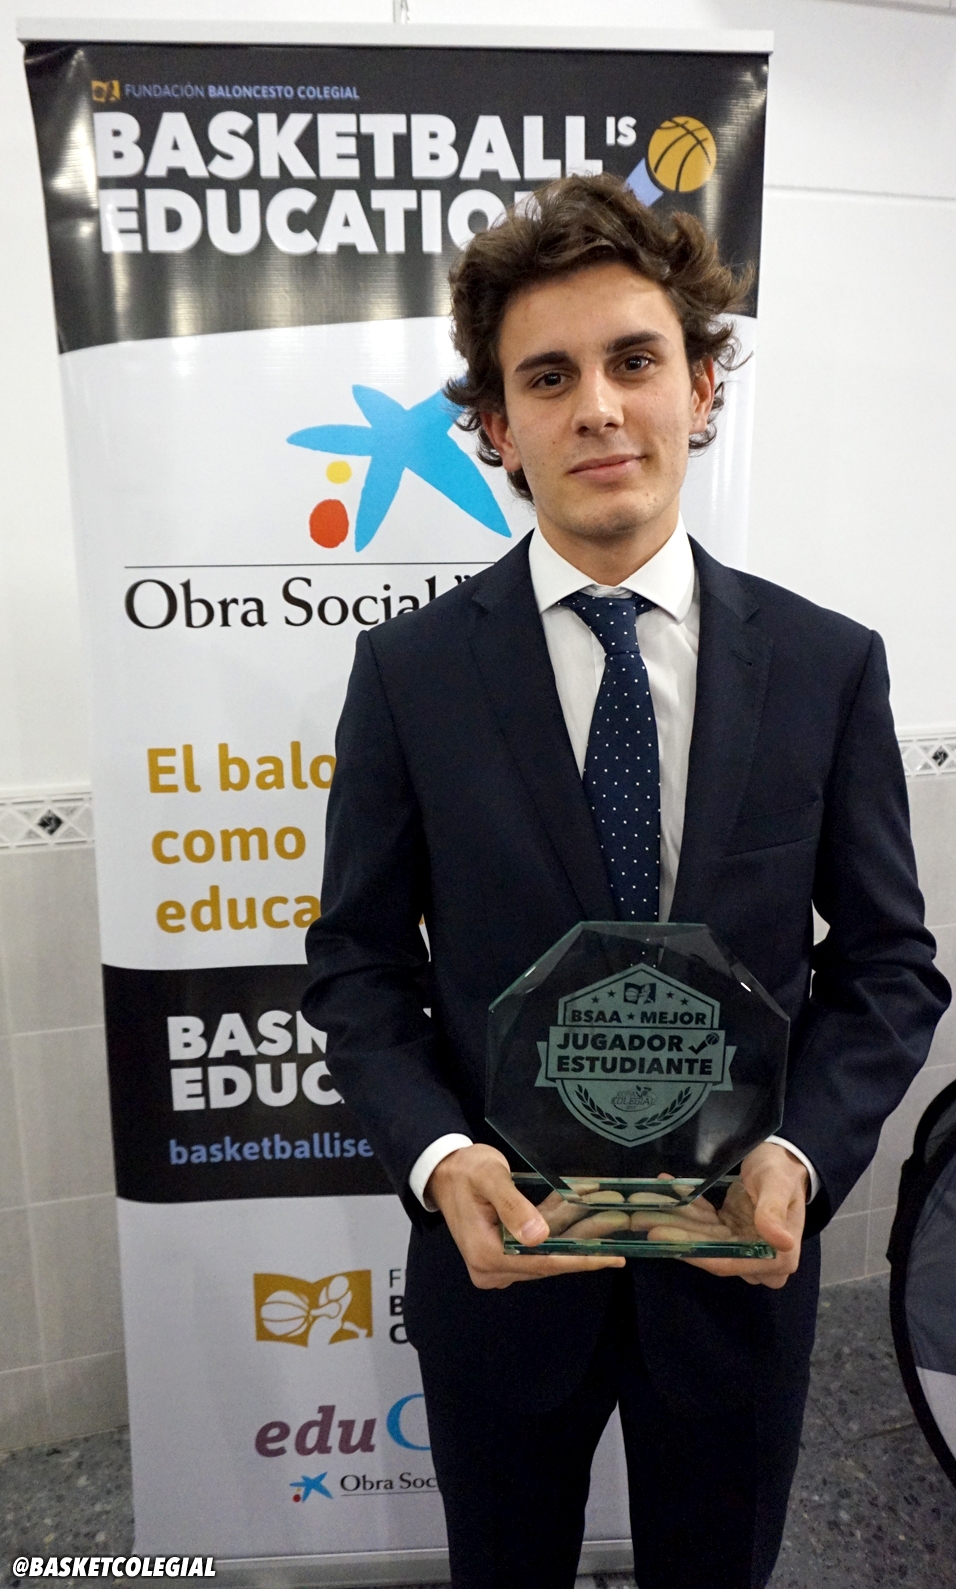 Premios Mejor Jugador-Estudiante Sevilla 2017 18